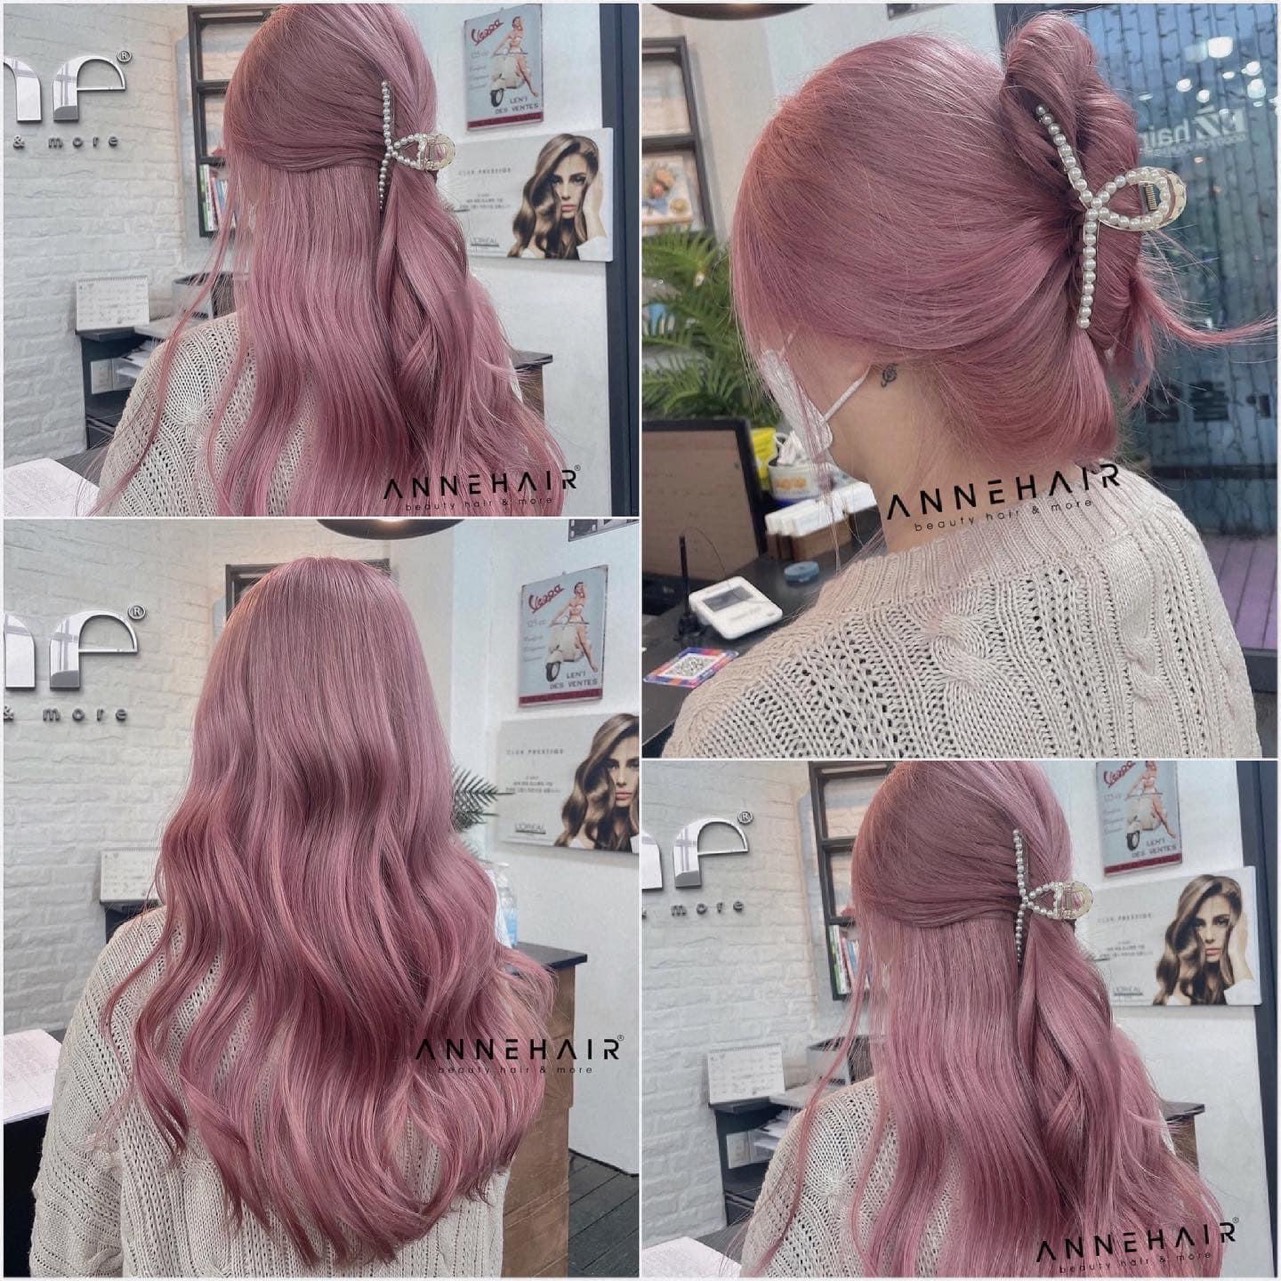 Thuốc nhuộm tóc màu Tím Hồng Baby Pink là lựa chọn không thể tuyệt vời hơn cho một phong cách táo bạo và cá tính. Xem hình ảnh và tạo cảm hứng cho sự thay đổi ngoạn mục của tóc bạn.